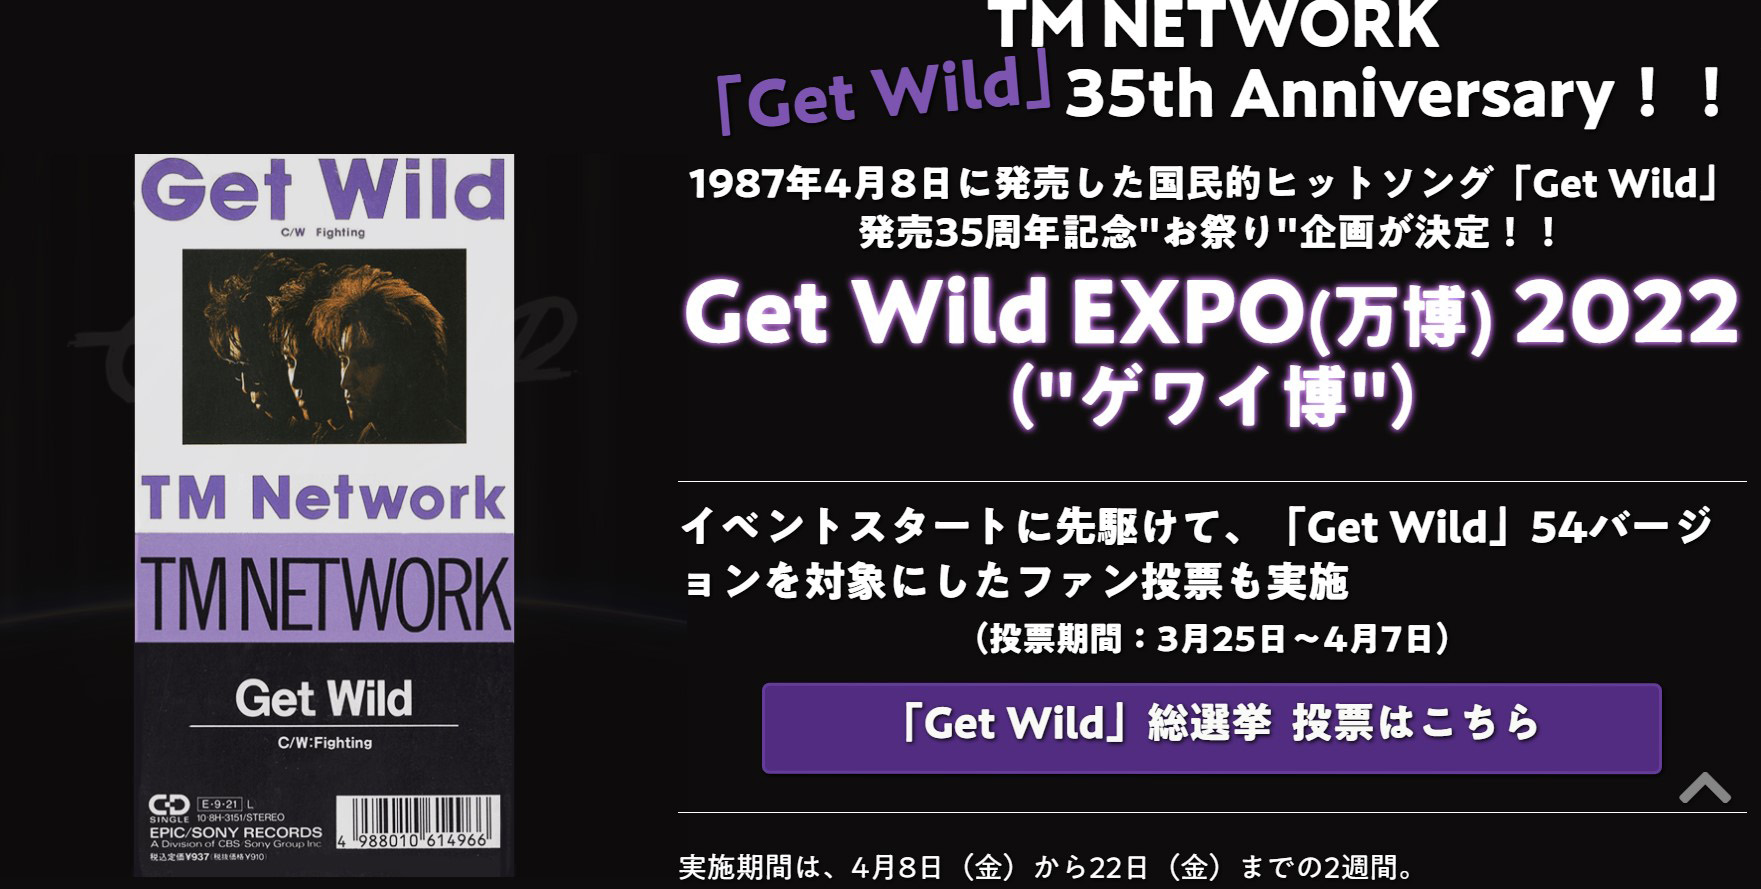 シティーハンター のed Get Wild 35周年 特設サイト Get Wild Expo が期間限定公開 Game Watch